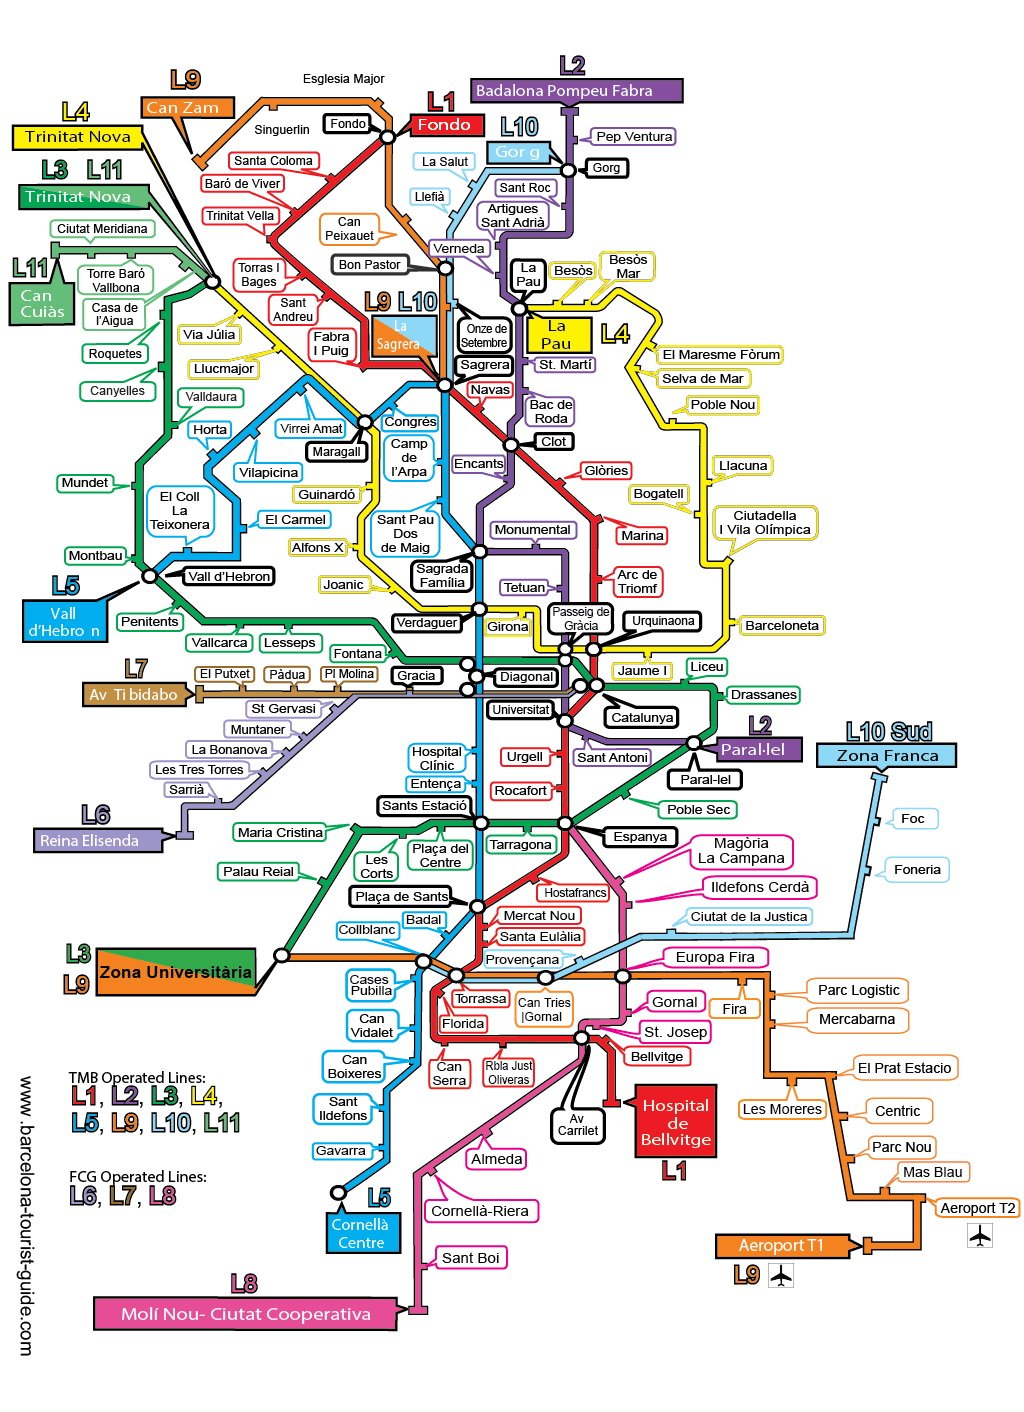 plano red metro barcelona tourist guide